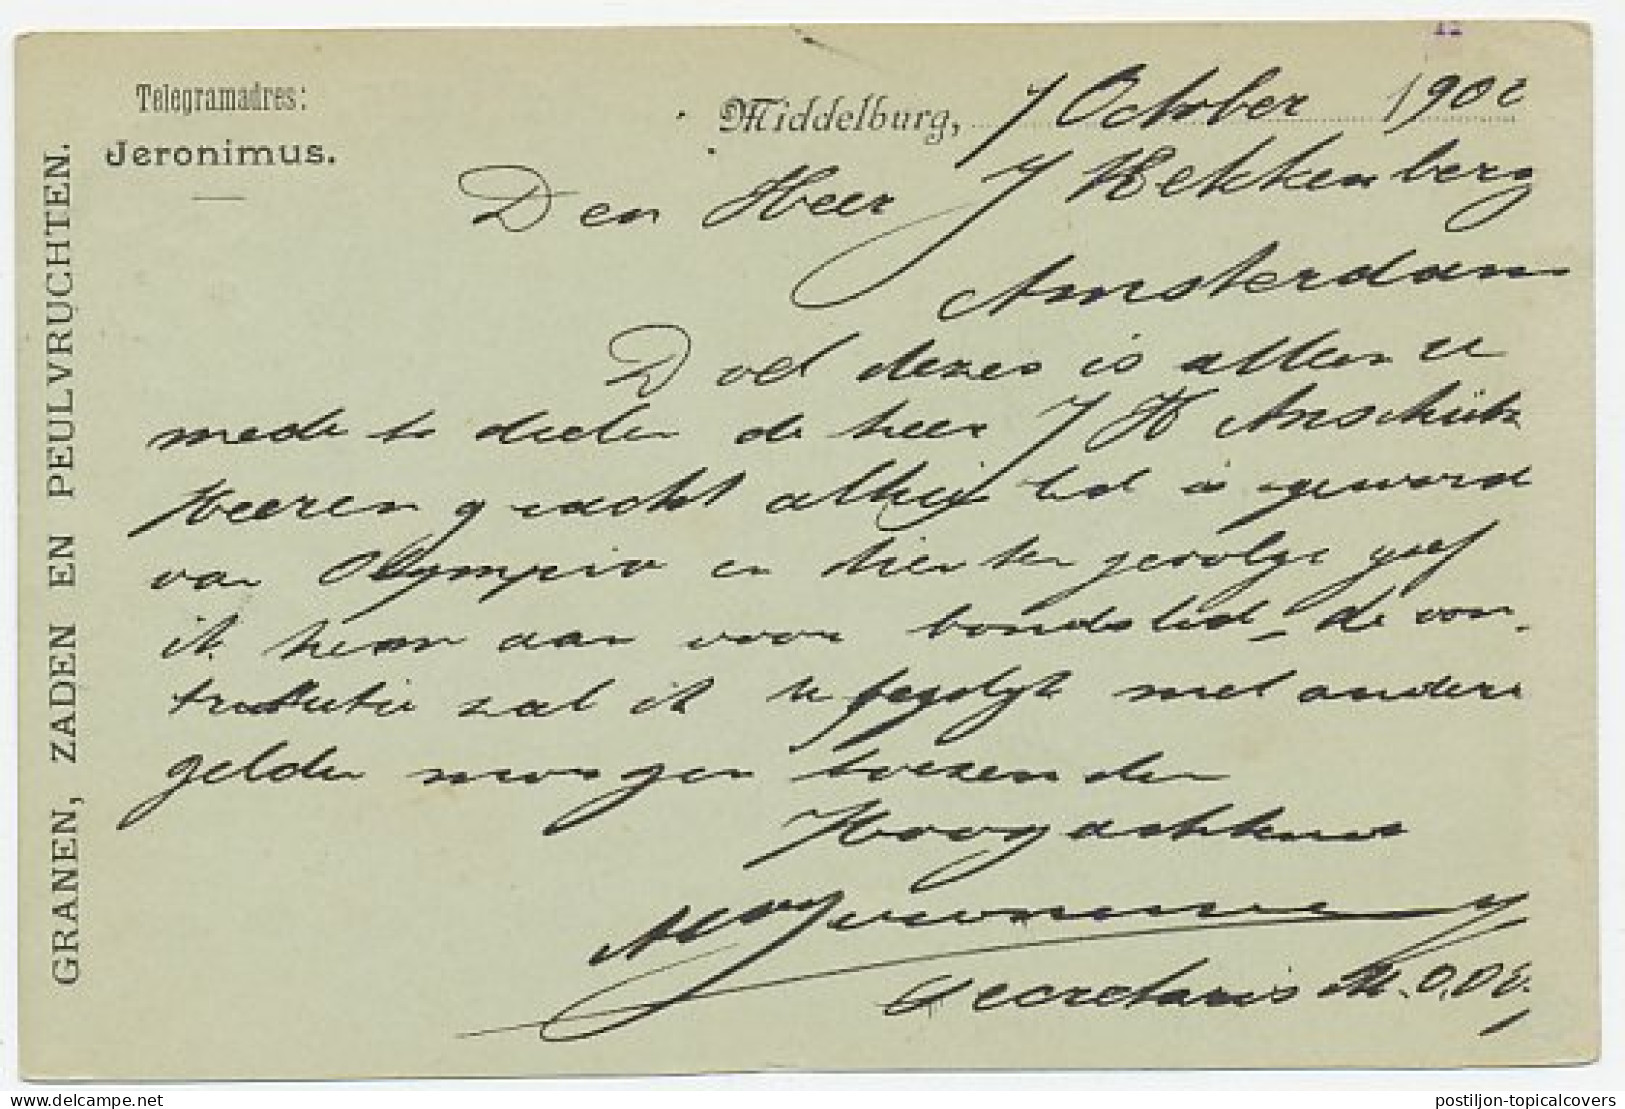 Firma Briefkaart Middelburg 1900 - Granen / Zaden / Peulvruchten - Ohne Zuordnung